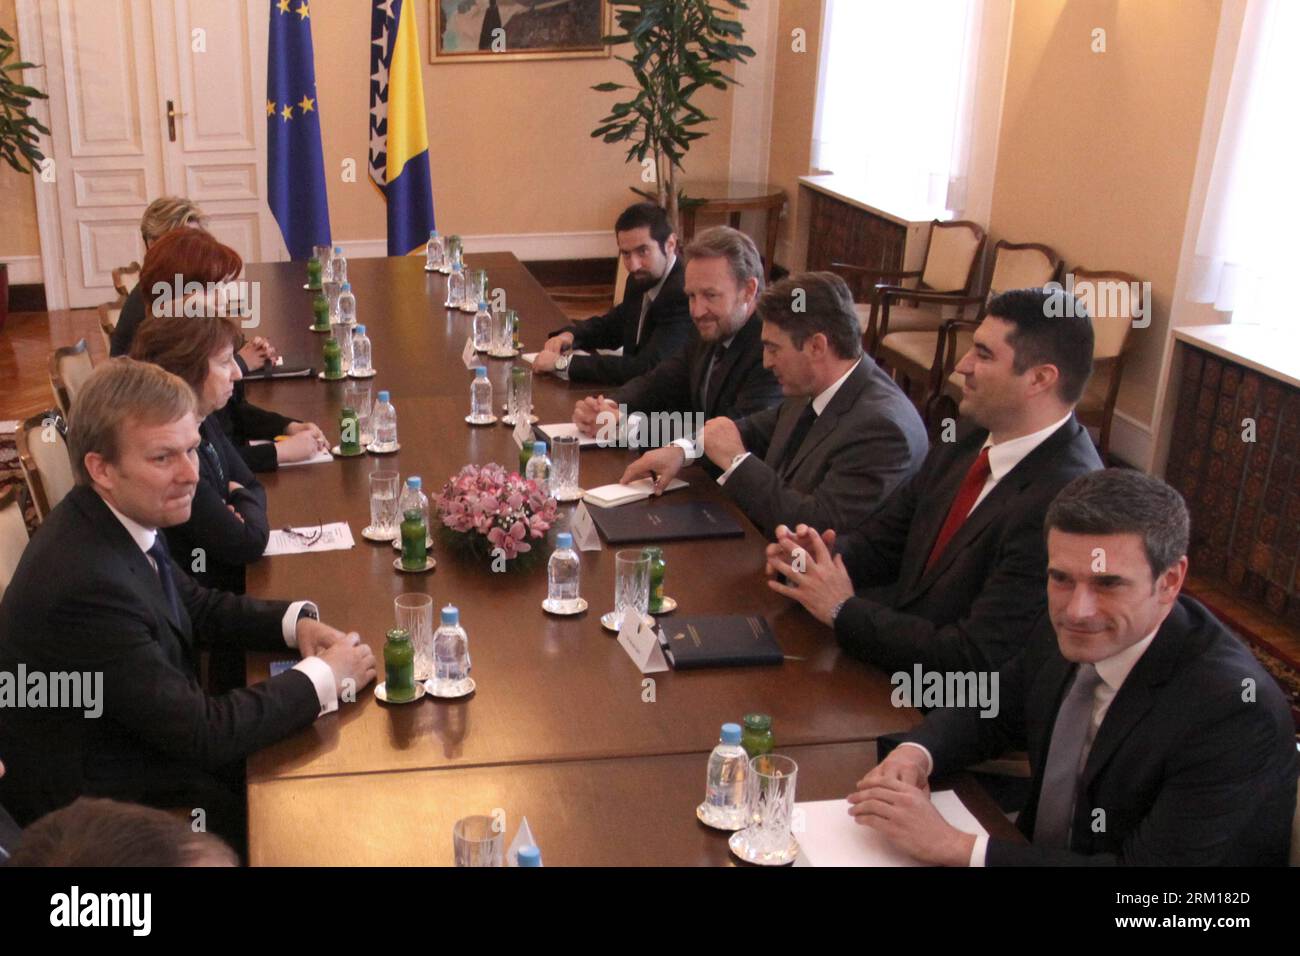 Bildnummer: 59534913 Datum: 18.04.2013 Copyright: imago/Xinhua (130418) -- SARAJEVO, 18 aprile 2013 (Xinhua) -- i membri della presidenza della Bosnia-Erzegovina (BiH) Bakir Izetbegovic (4a R) e Zeljko Komsic (3a R) tengono un incontro con Catherine Ashton (2a L), alto rappresentante dell'UE per gli affari esteri e la politica di sicurezza, presso la presidenza di Sarajevo, BiH, il 18 aprile 2013. (Xinhua/Haris Memija)(zhf) BOSNIA-ERZEGOVINA-SARAJEVO-ASHTON-VISIT PUBLICATIONxNOTxINxCHN people xcb x0x 2013 quer premiumd 59534913 Data 18 04 2013 Copyright Imago XINHUA Sarajevo aprile 18 201 Foto Stock